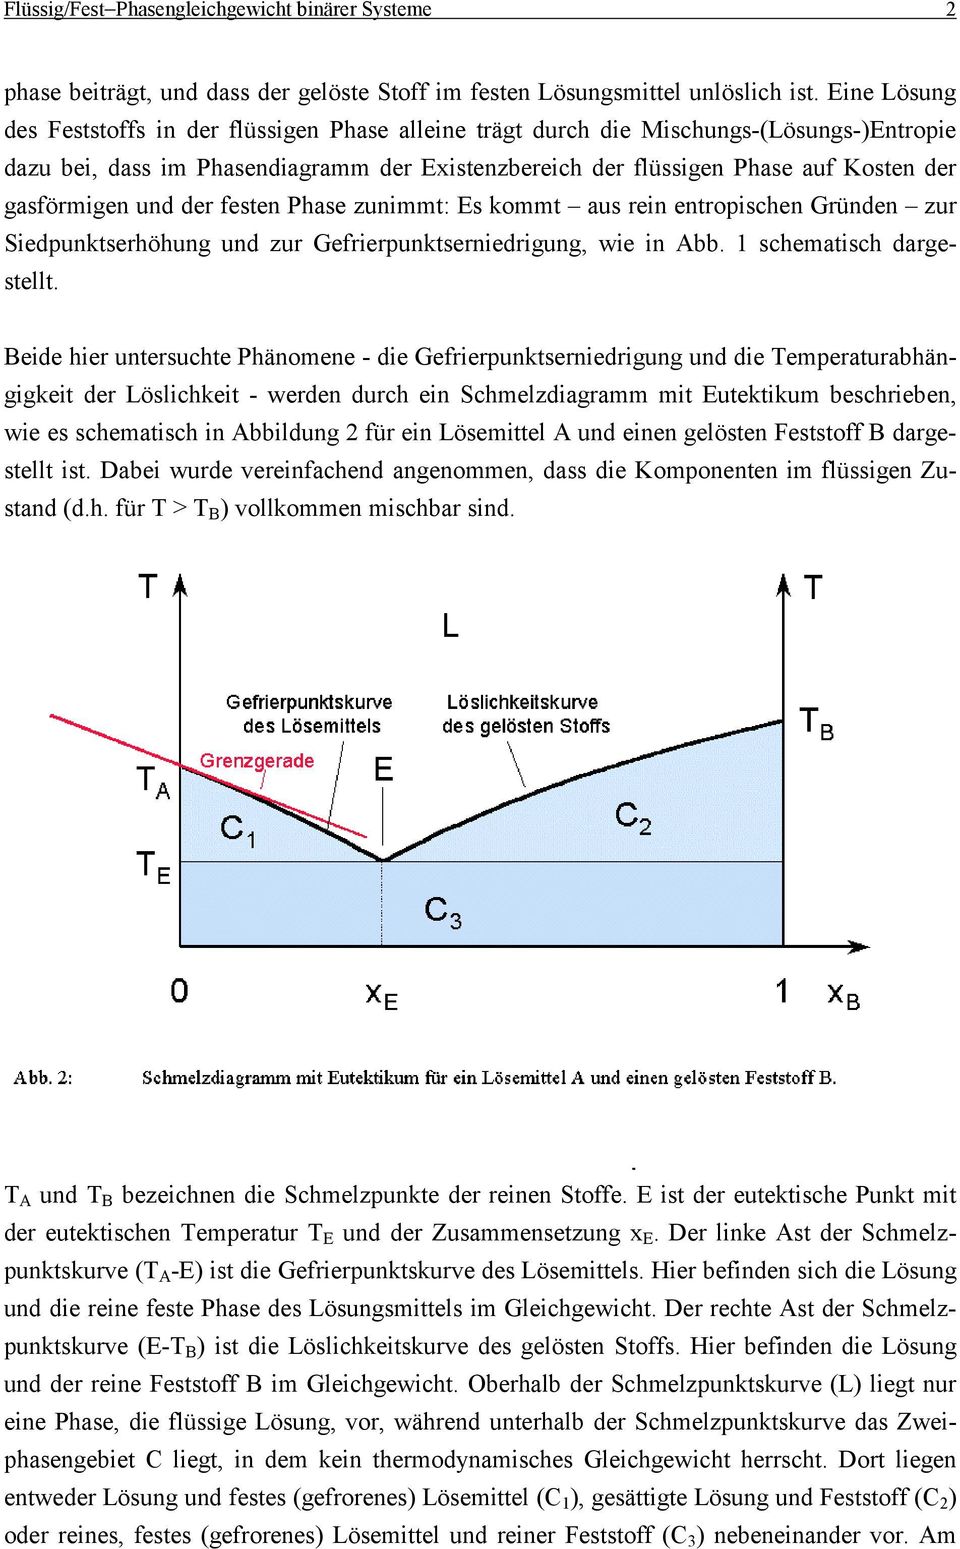 gasförmigen und der festen Phase zunimmt: Es kommt aus rein entropischen Gründen zur Siedpunktserhöhung und zur Gefrierpunktserniedrigung, wie in Abb. 1 schematisch dargestellt.